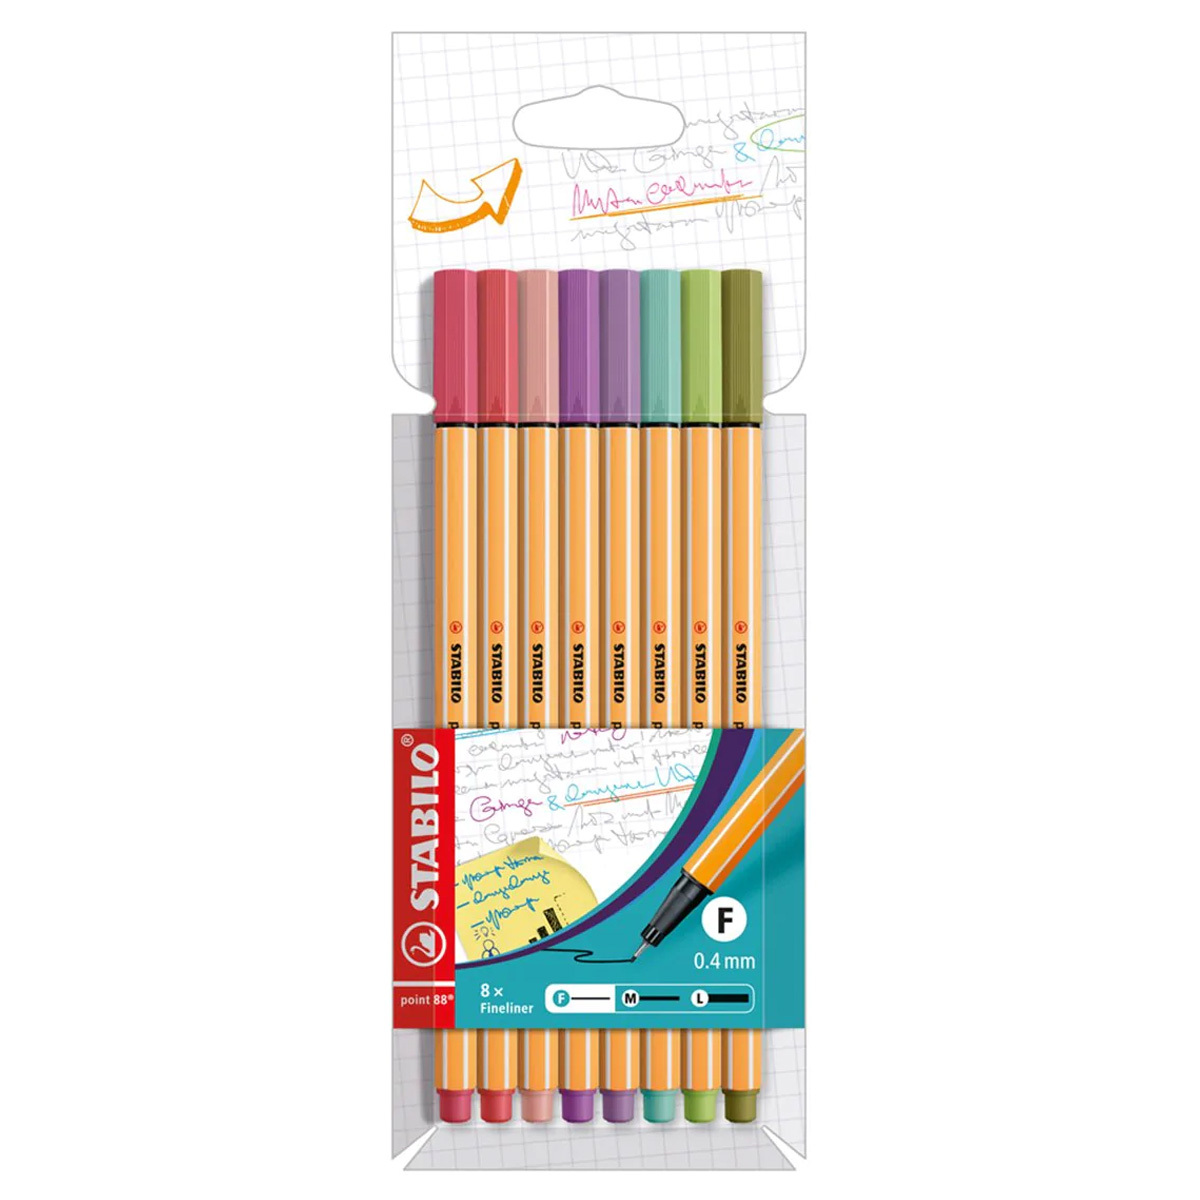 Resultado de imagen para rotuladores stabilo punta fina  Colorful  stationery, Cute school supplies, Artist markers